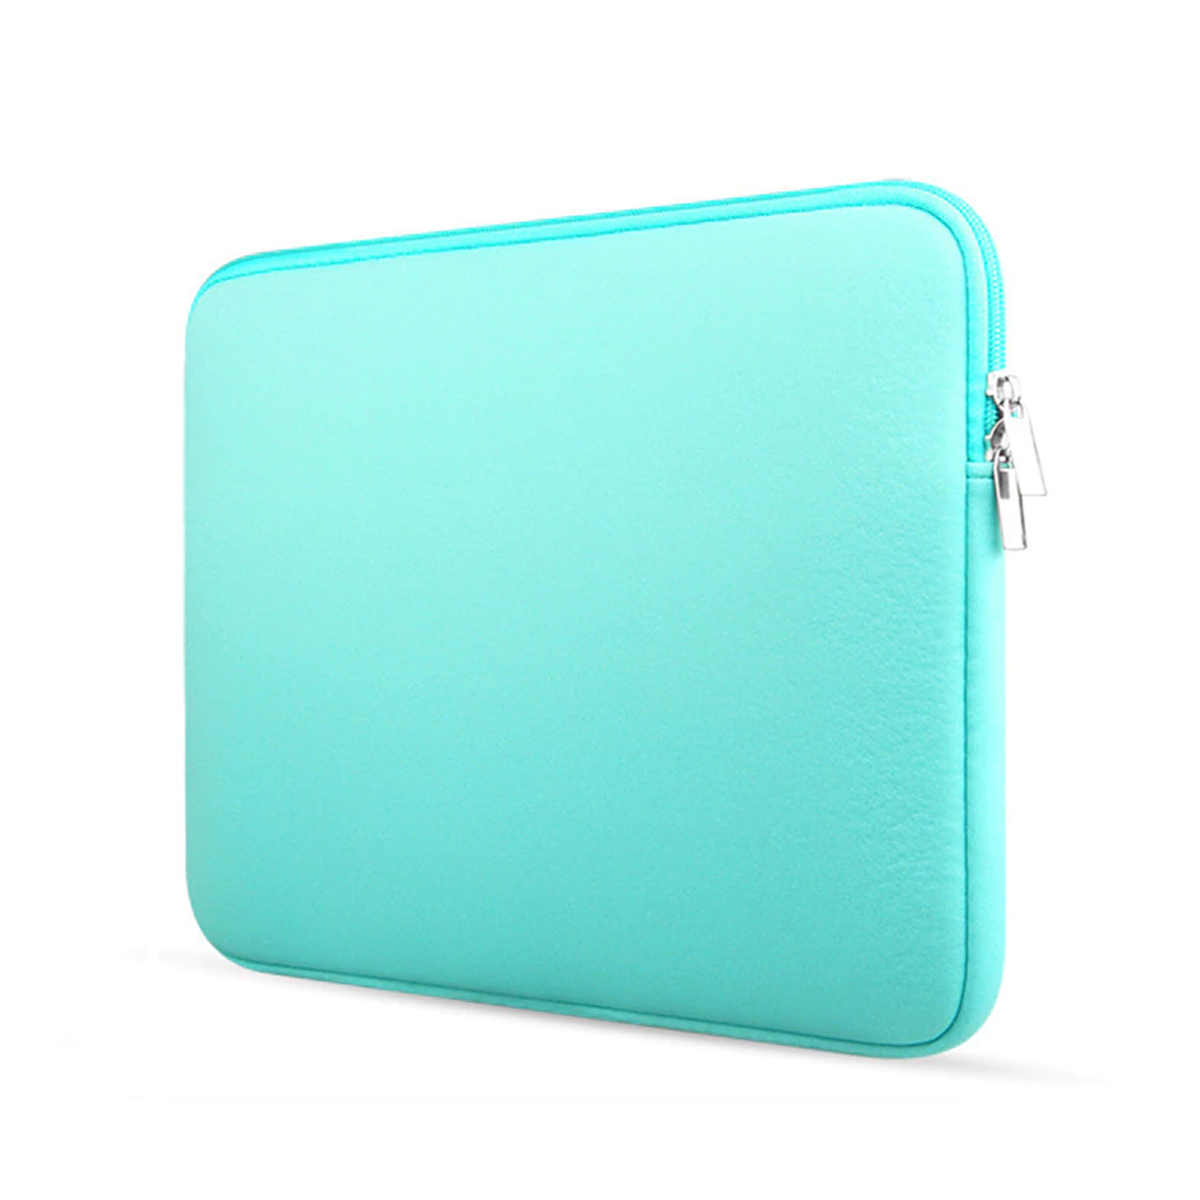 limiet zwaartekracht woede Laptop en Macbook Sleeve - 15.6 inch - Turquoise | Case2go.nl